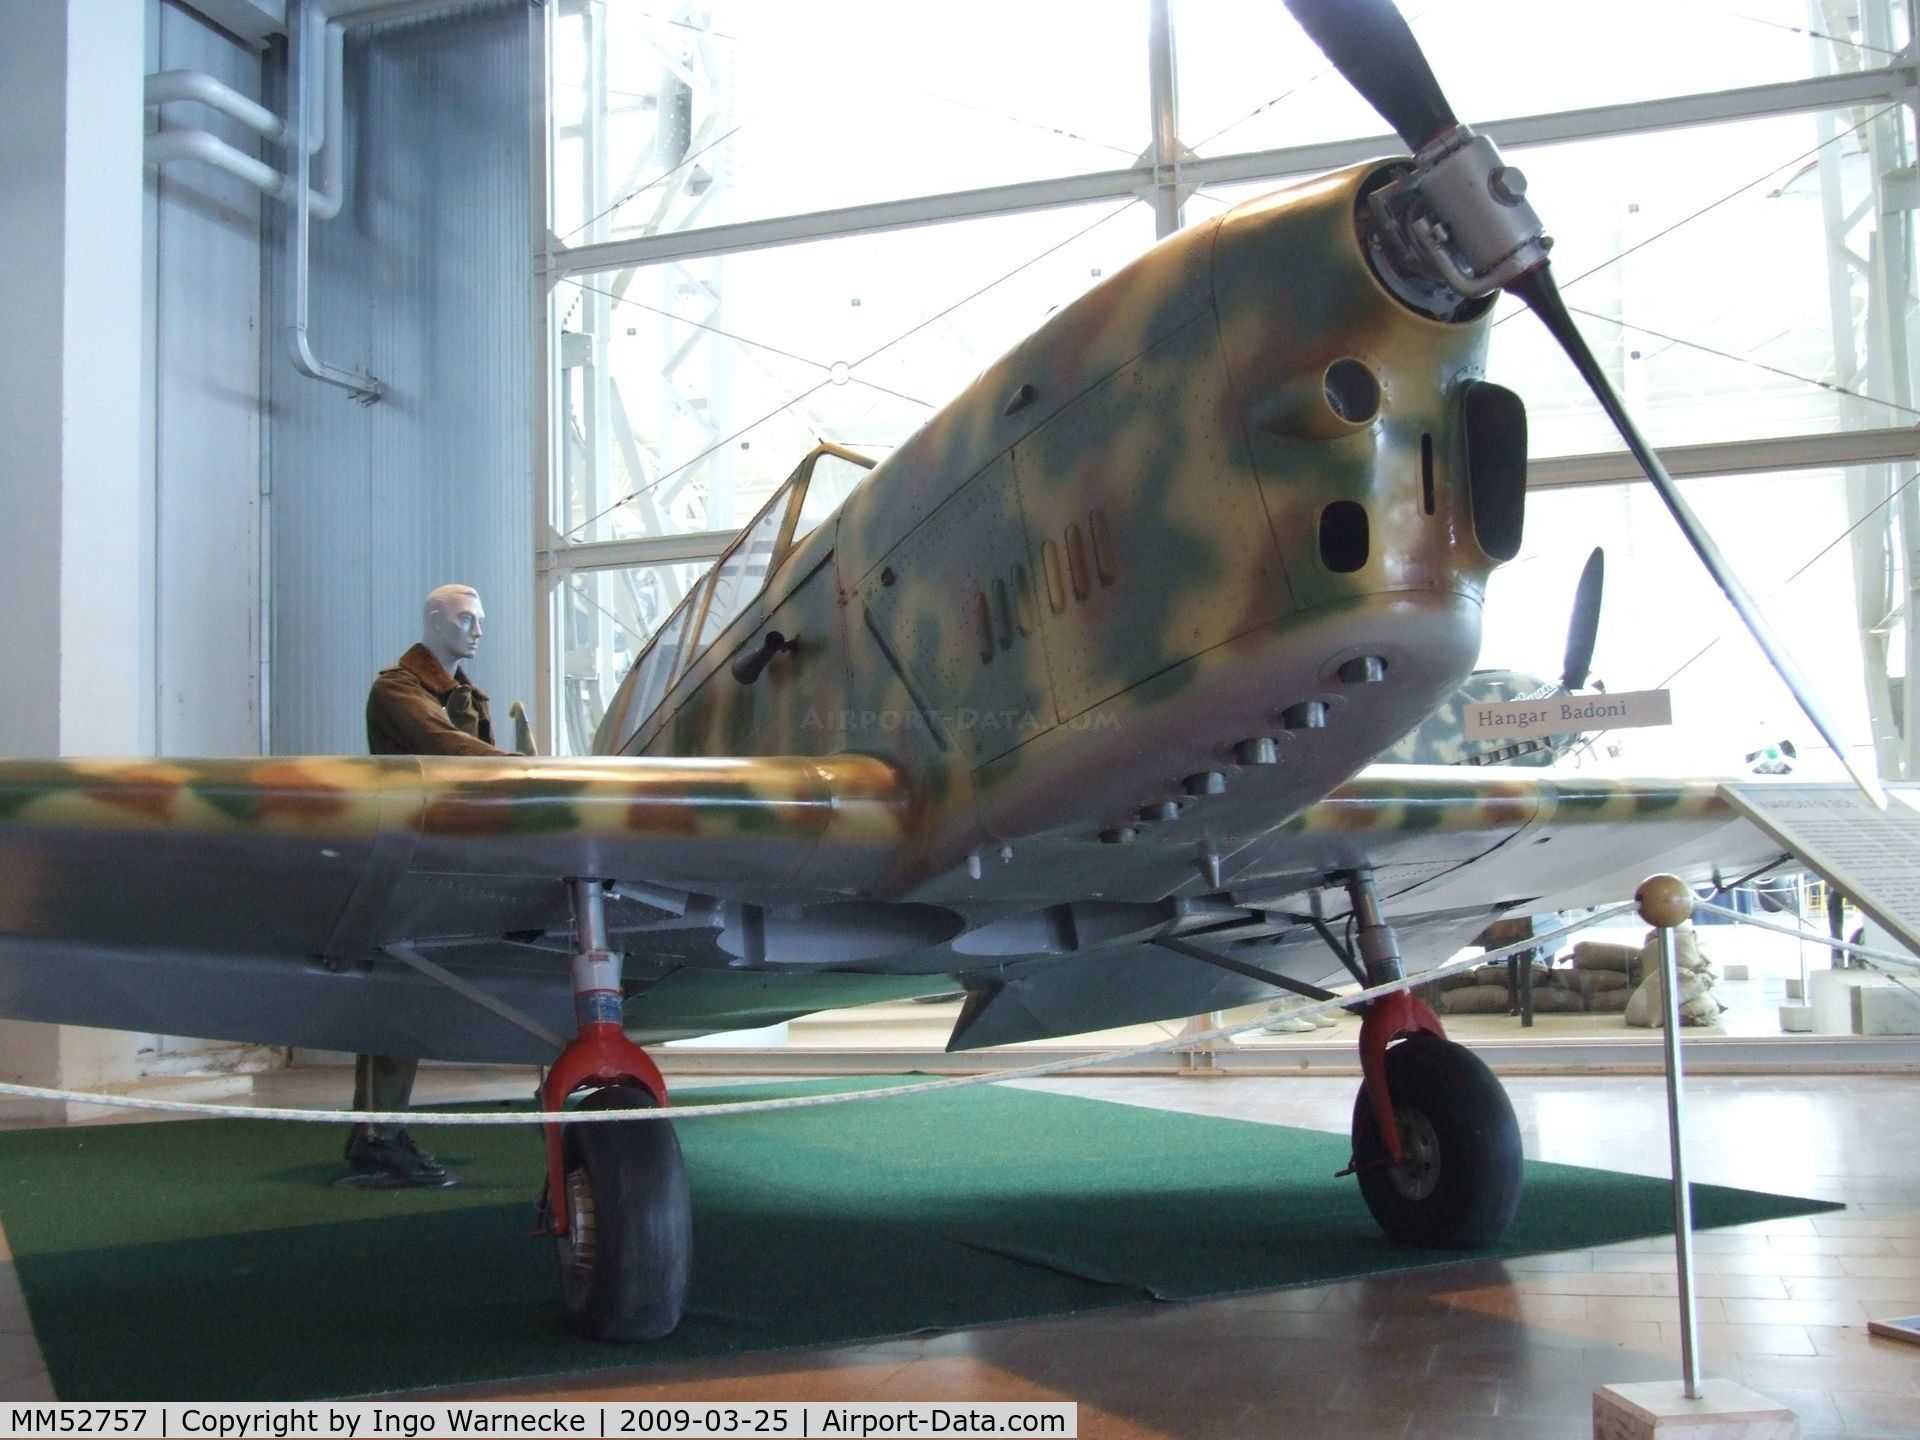 MM52757, Nardi-Piaggio FN.305 C/N 766, Nardi FN.305 (Piaggio) at the Museo storico dell'Aeronautica Militare, Vigna di Valle